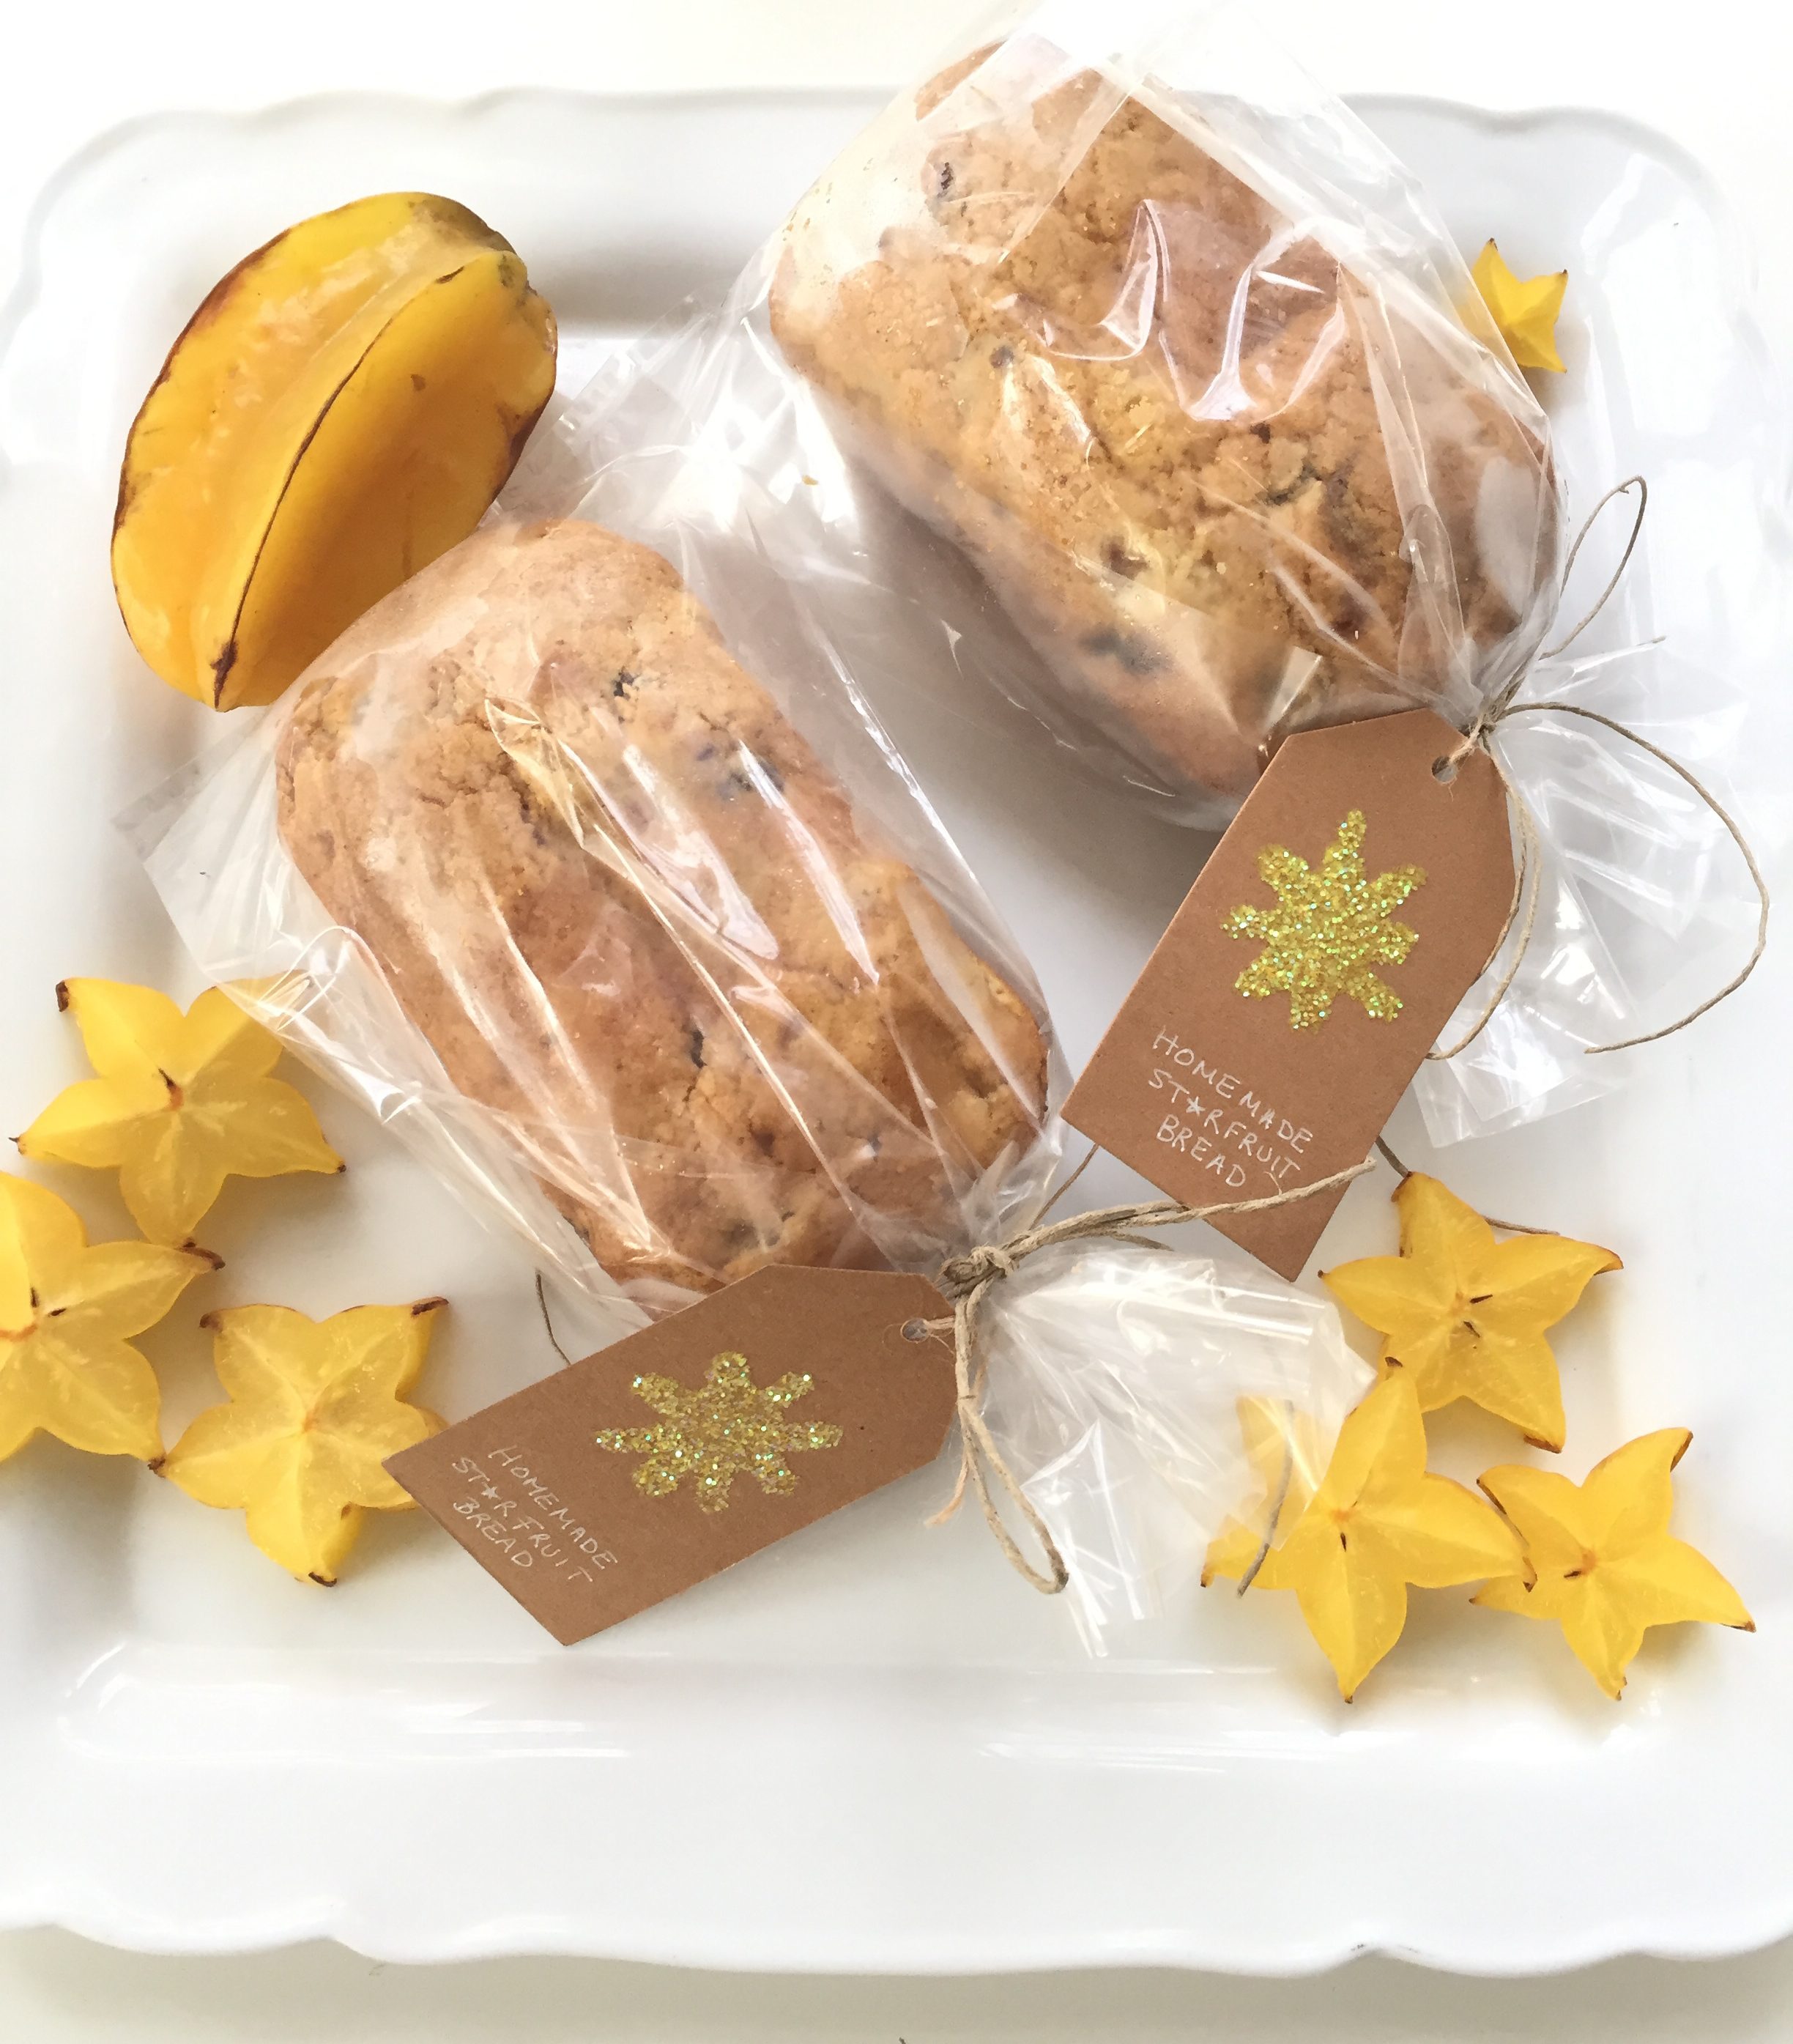 starfruit bread